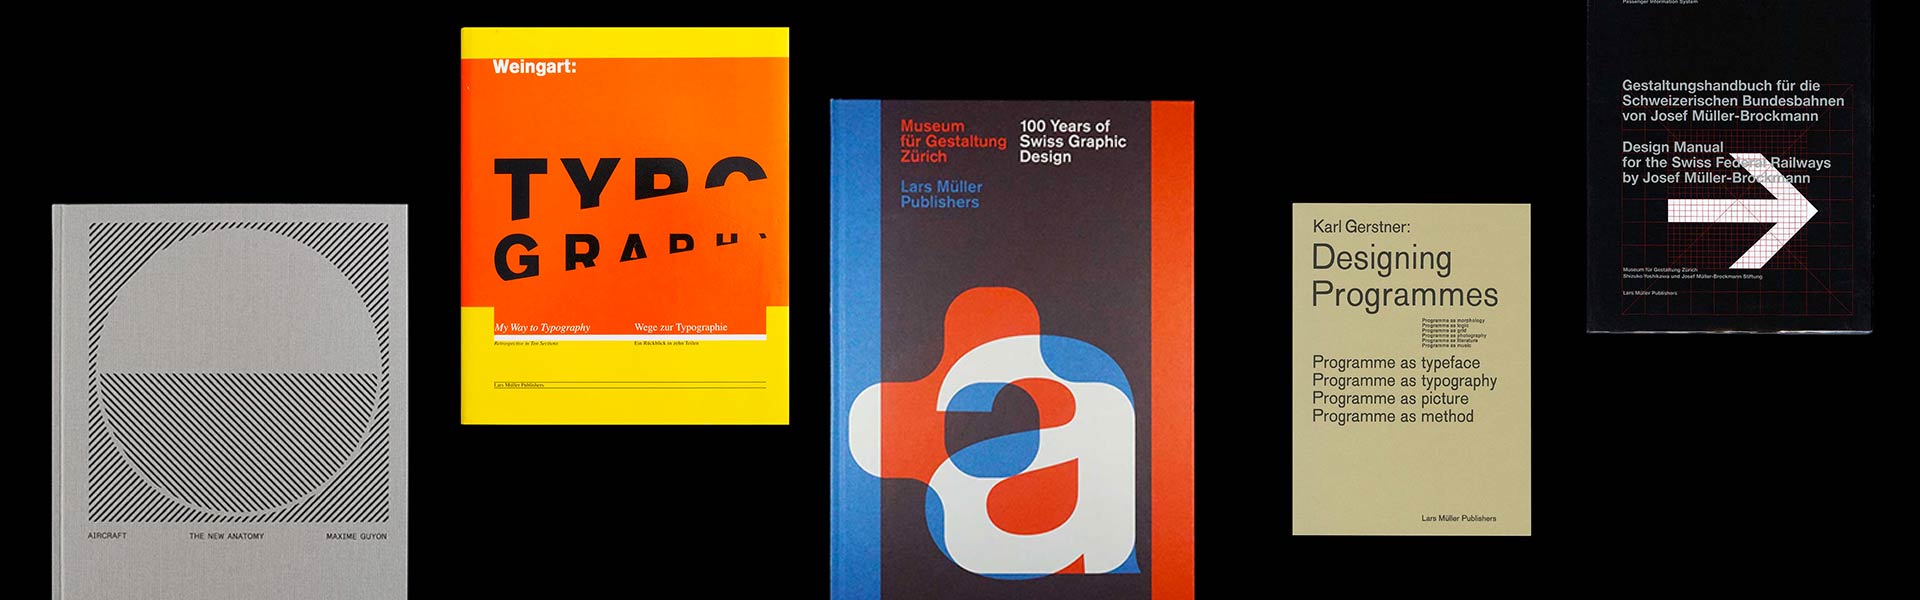 100 Years of Swiss Graphic Design – WK®